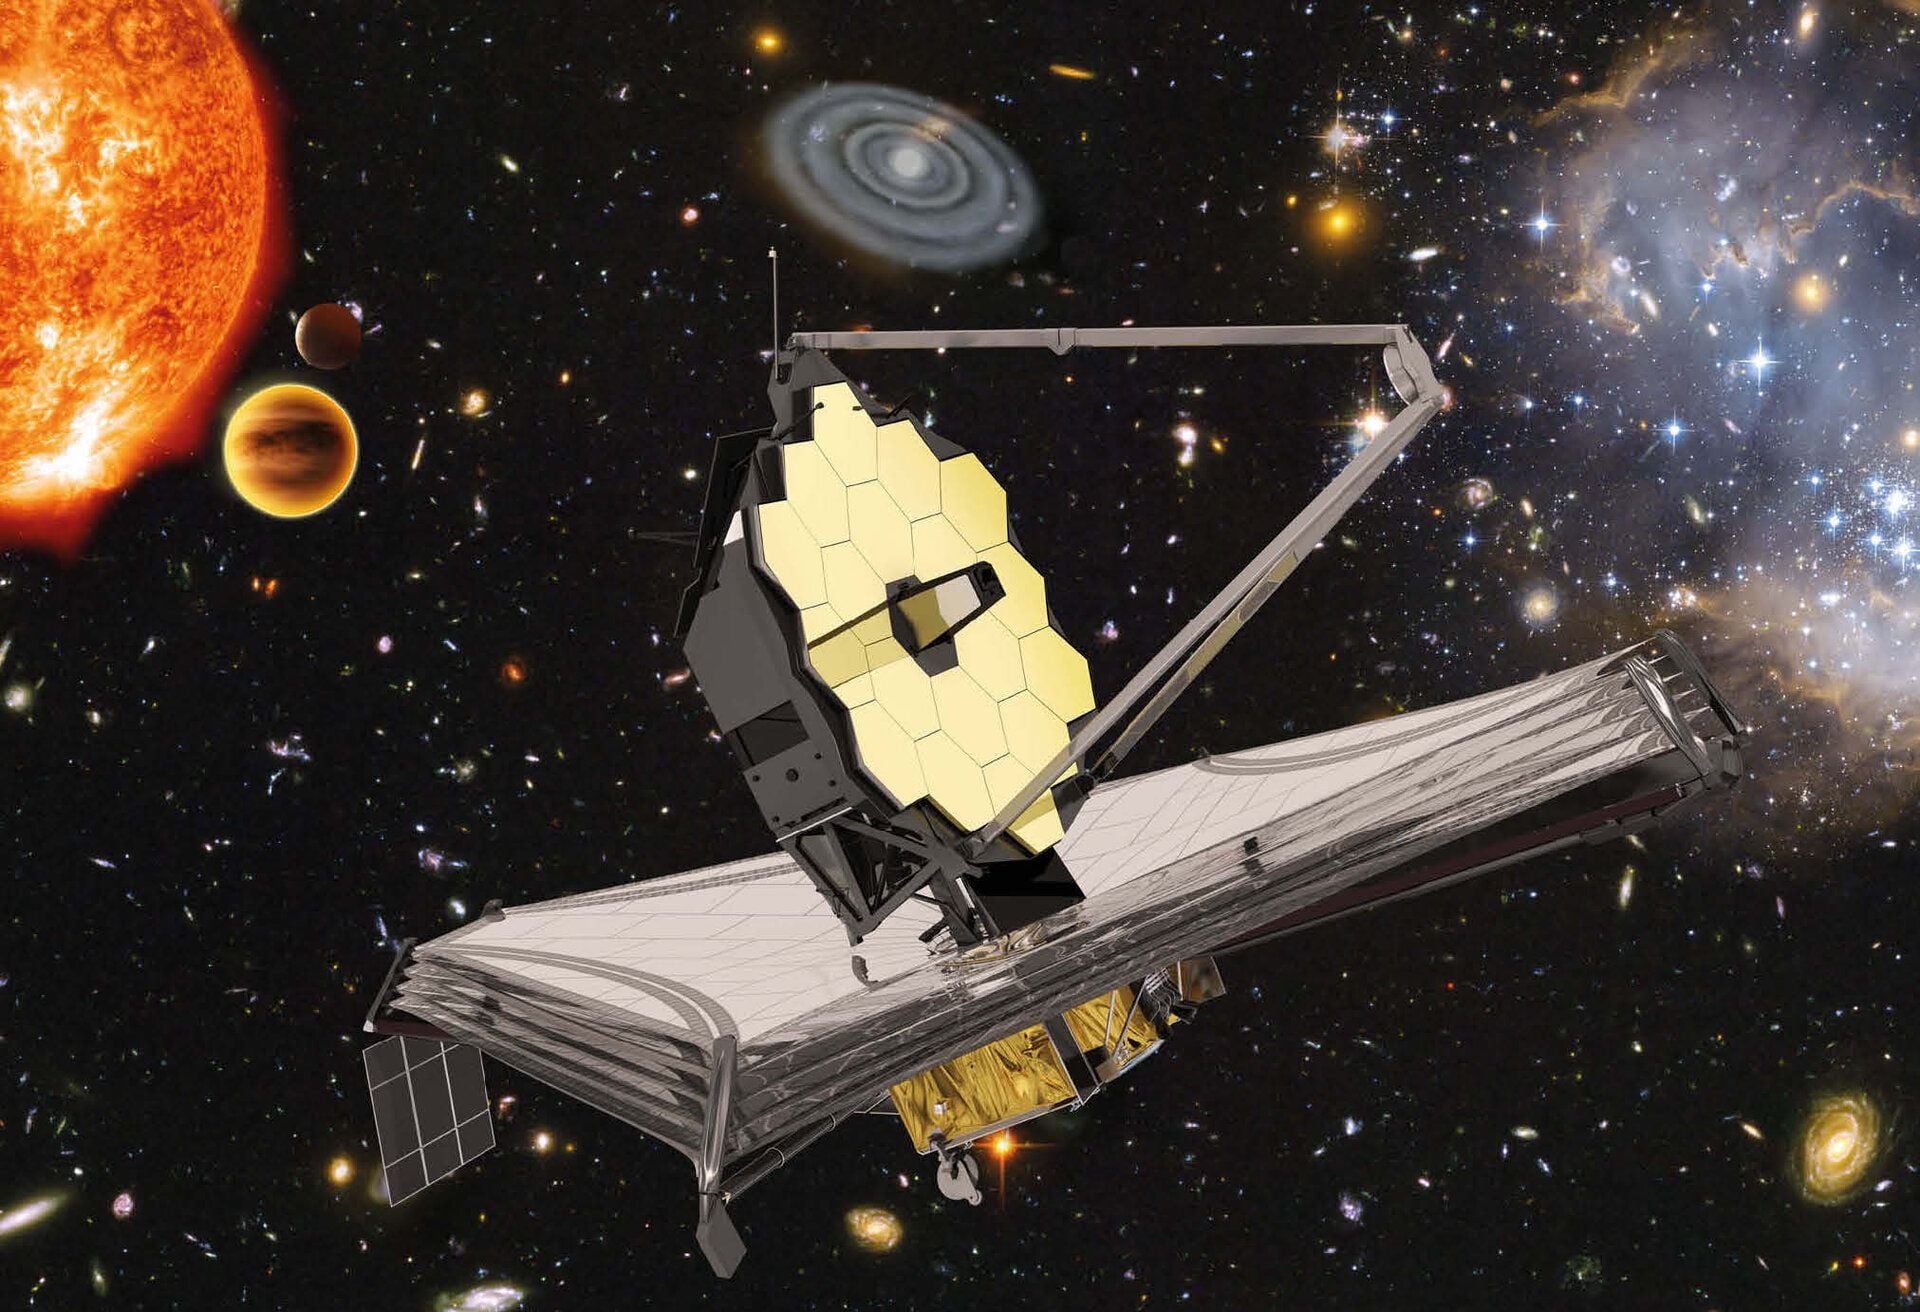 Artist's rendering of NASA's completed James Webb Space Telescope in deep space.